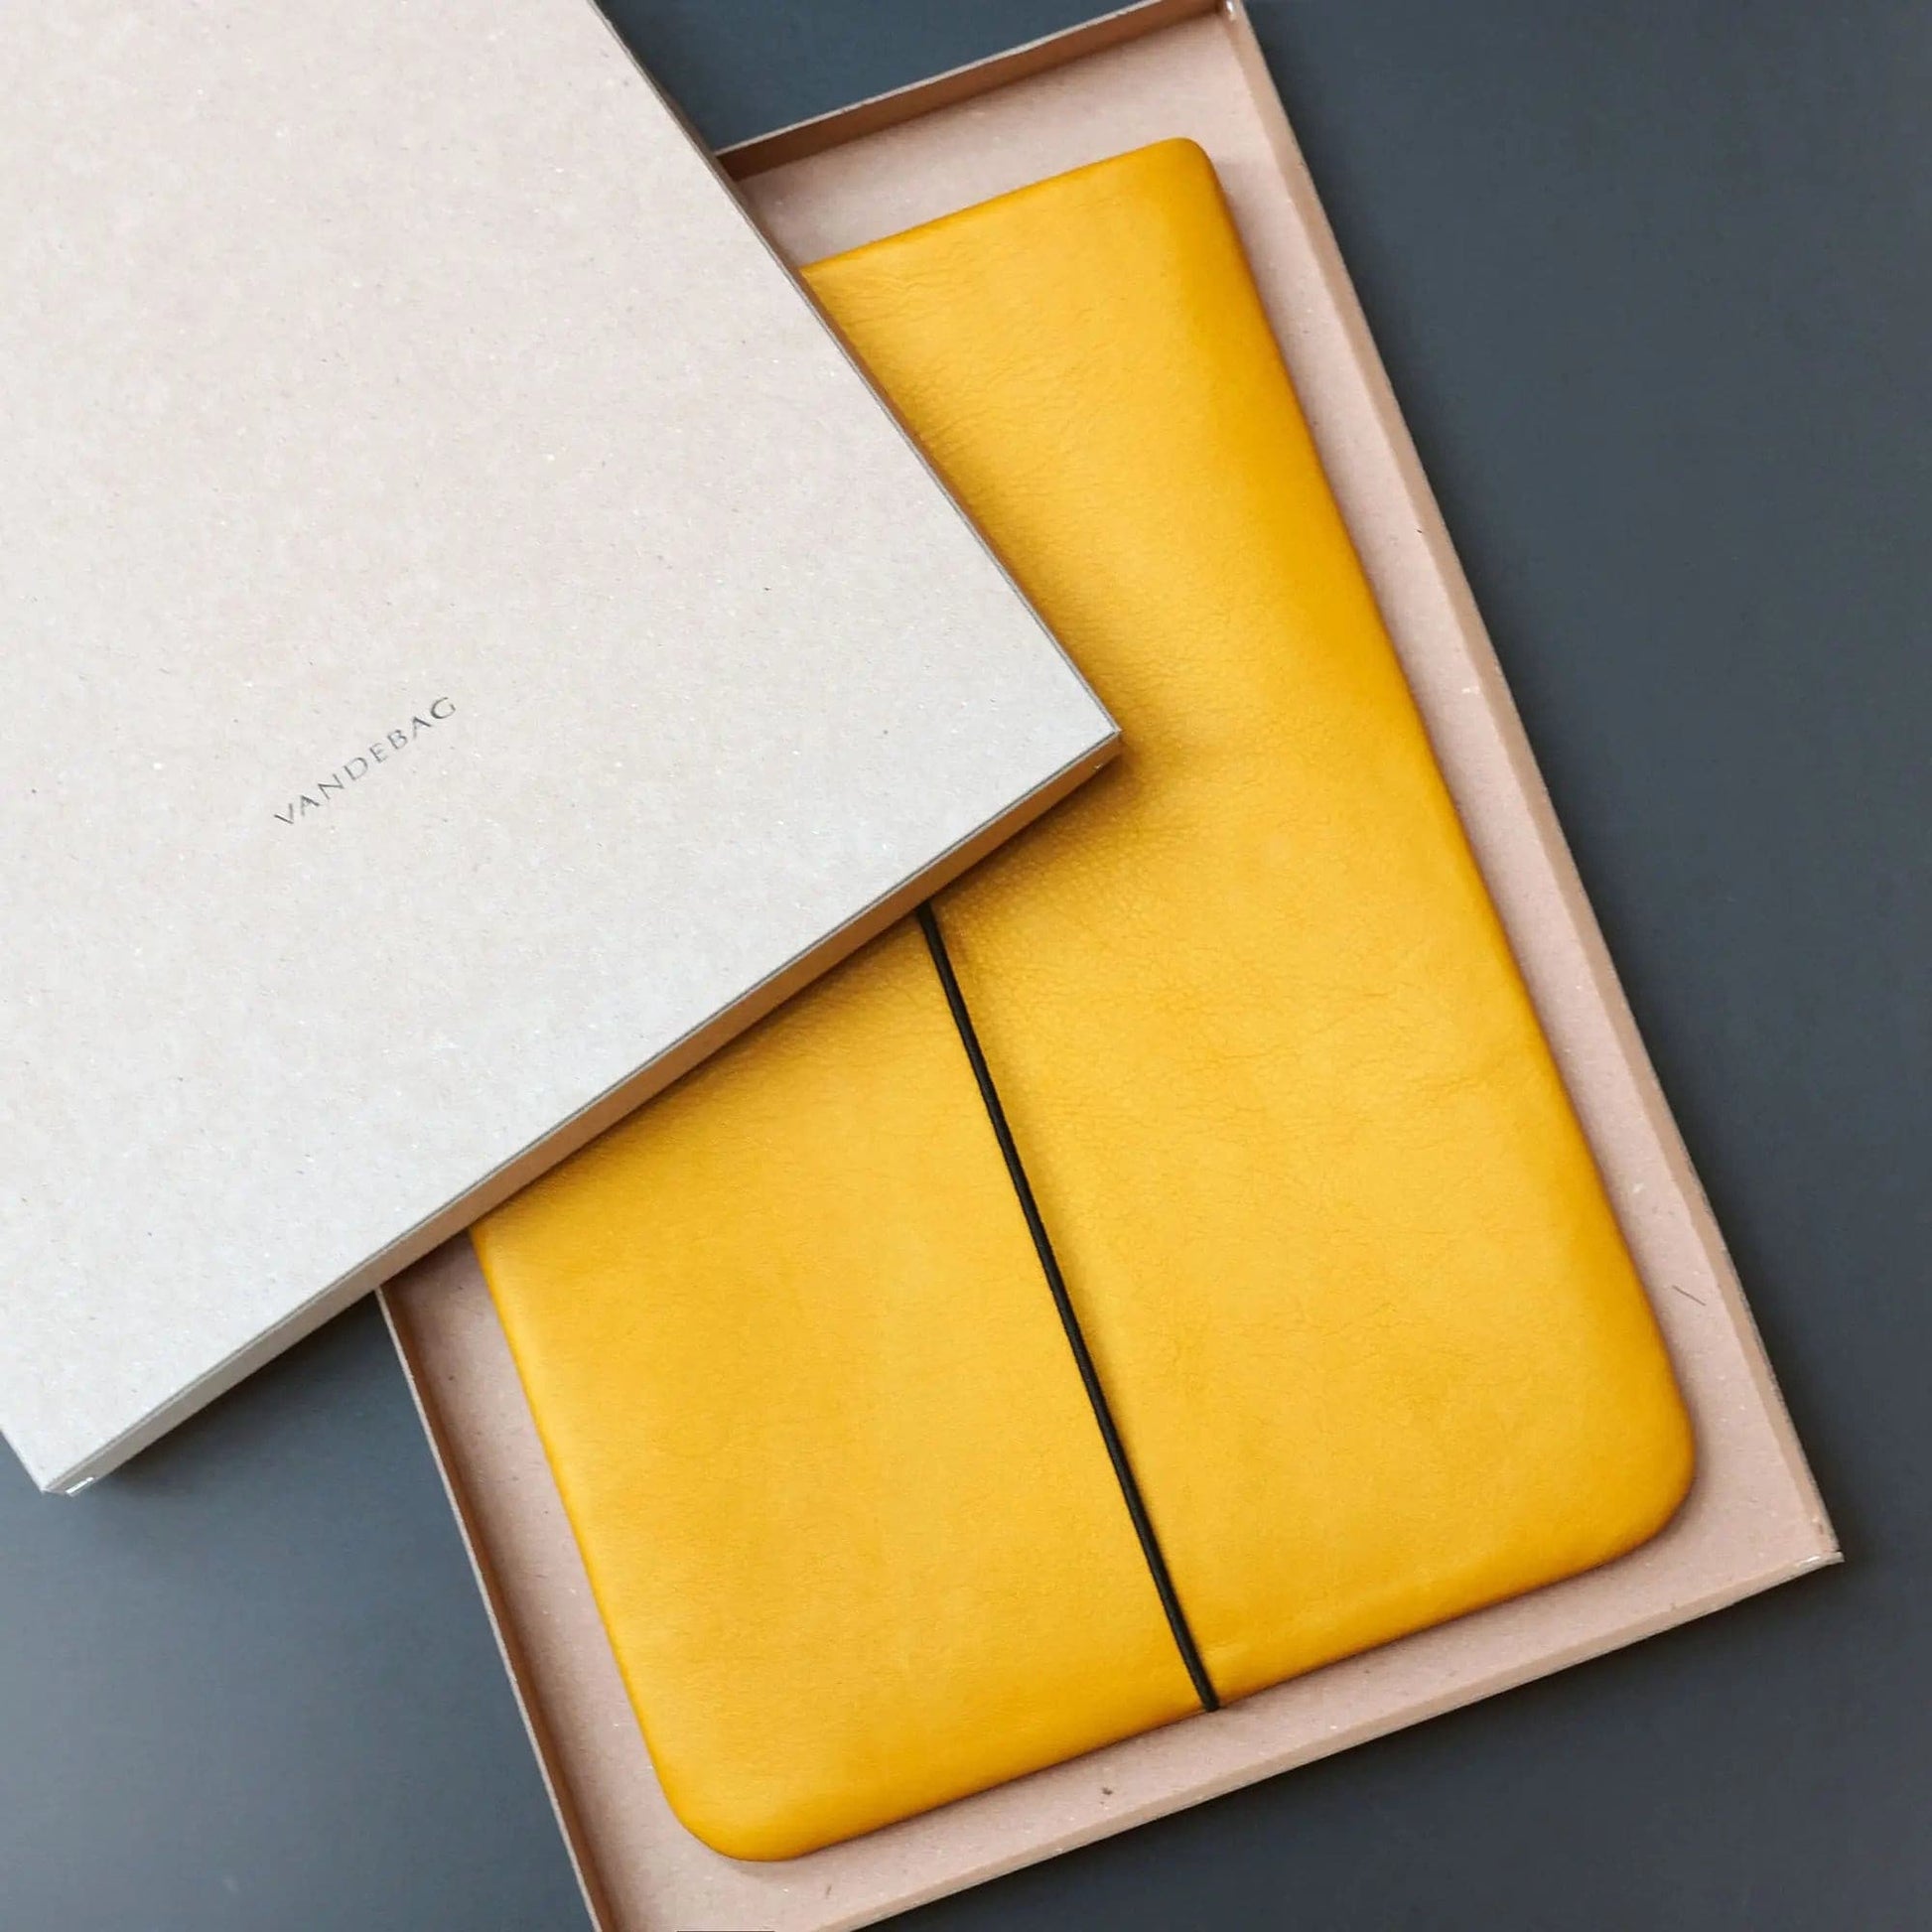 Notebookhülle aus gelbem Leder liegt in einer Produktbox